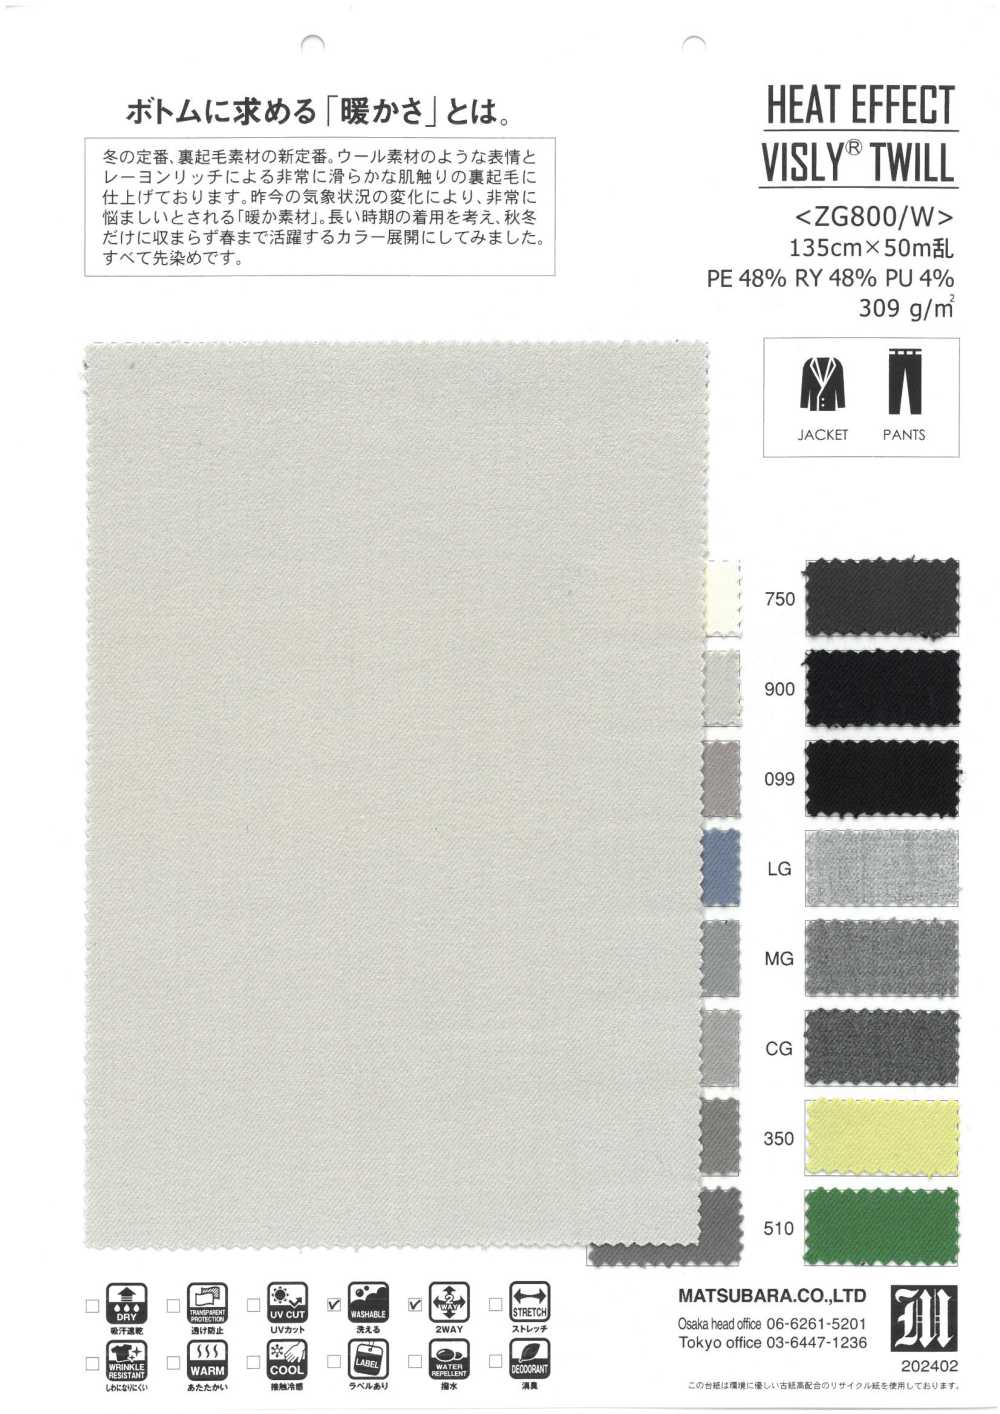 ZG800/W Wärmeeffekt Visly®️ TWILL[Textilgewebe] Matsubara